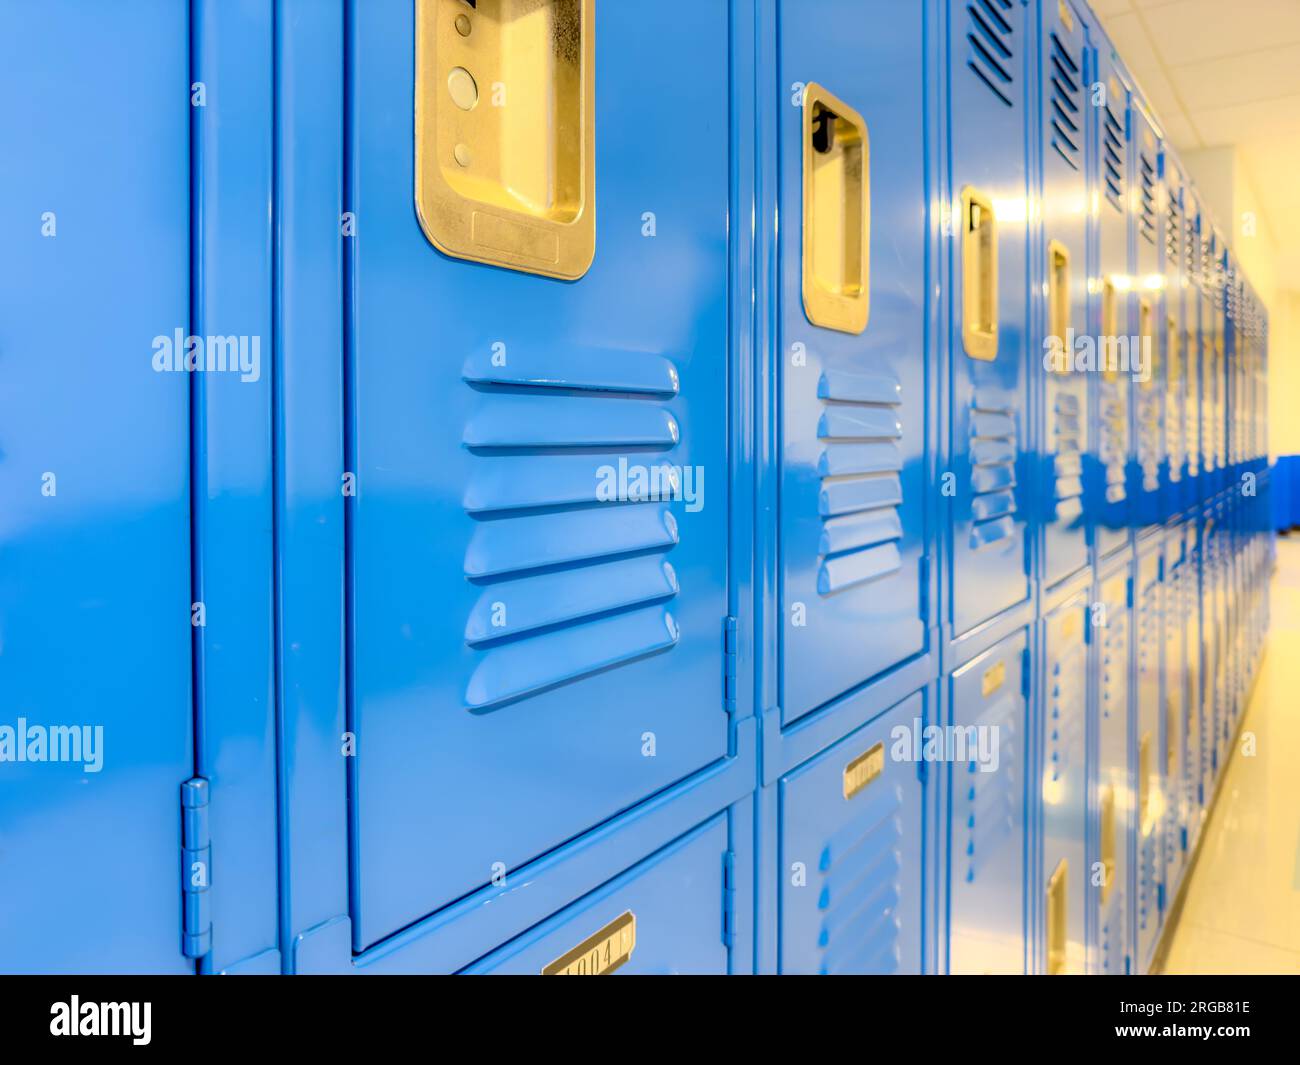 Casilleros de metal azul a lo largo de un pasillo indescriptible en una escuela secundaria típica de EE.UU. No hay información identificable incluida y nadie en el hall. Foto de stock